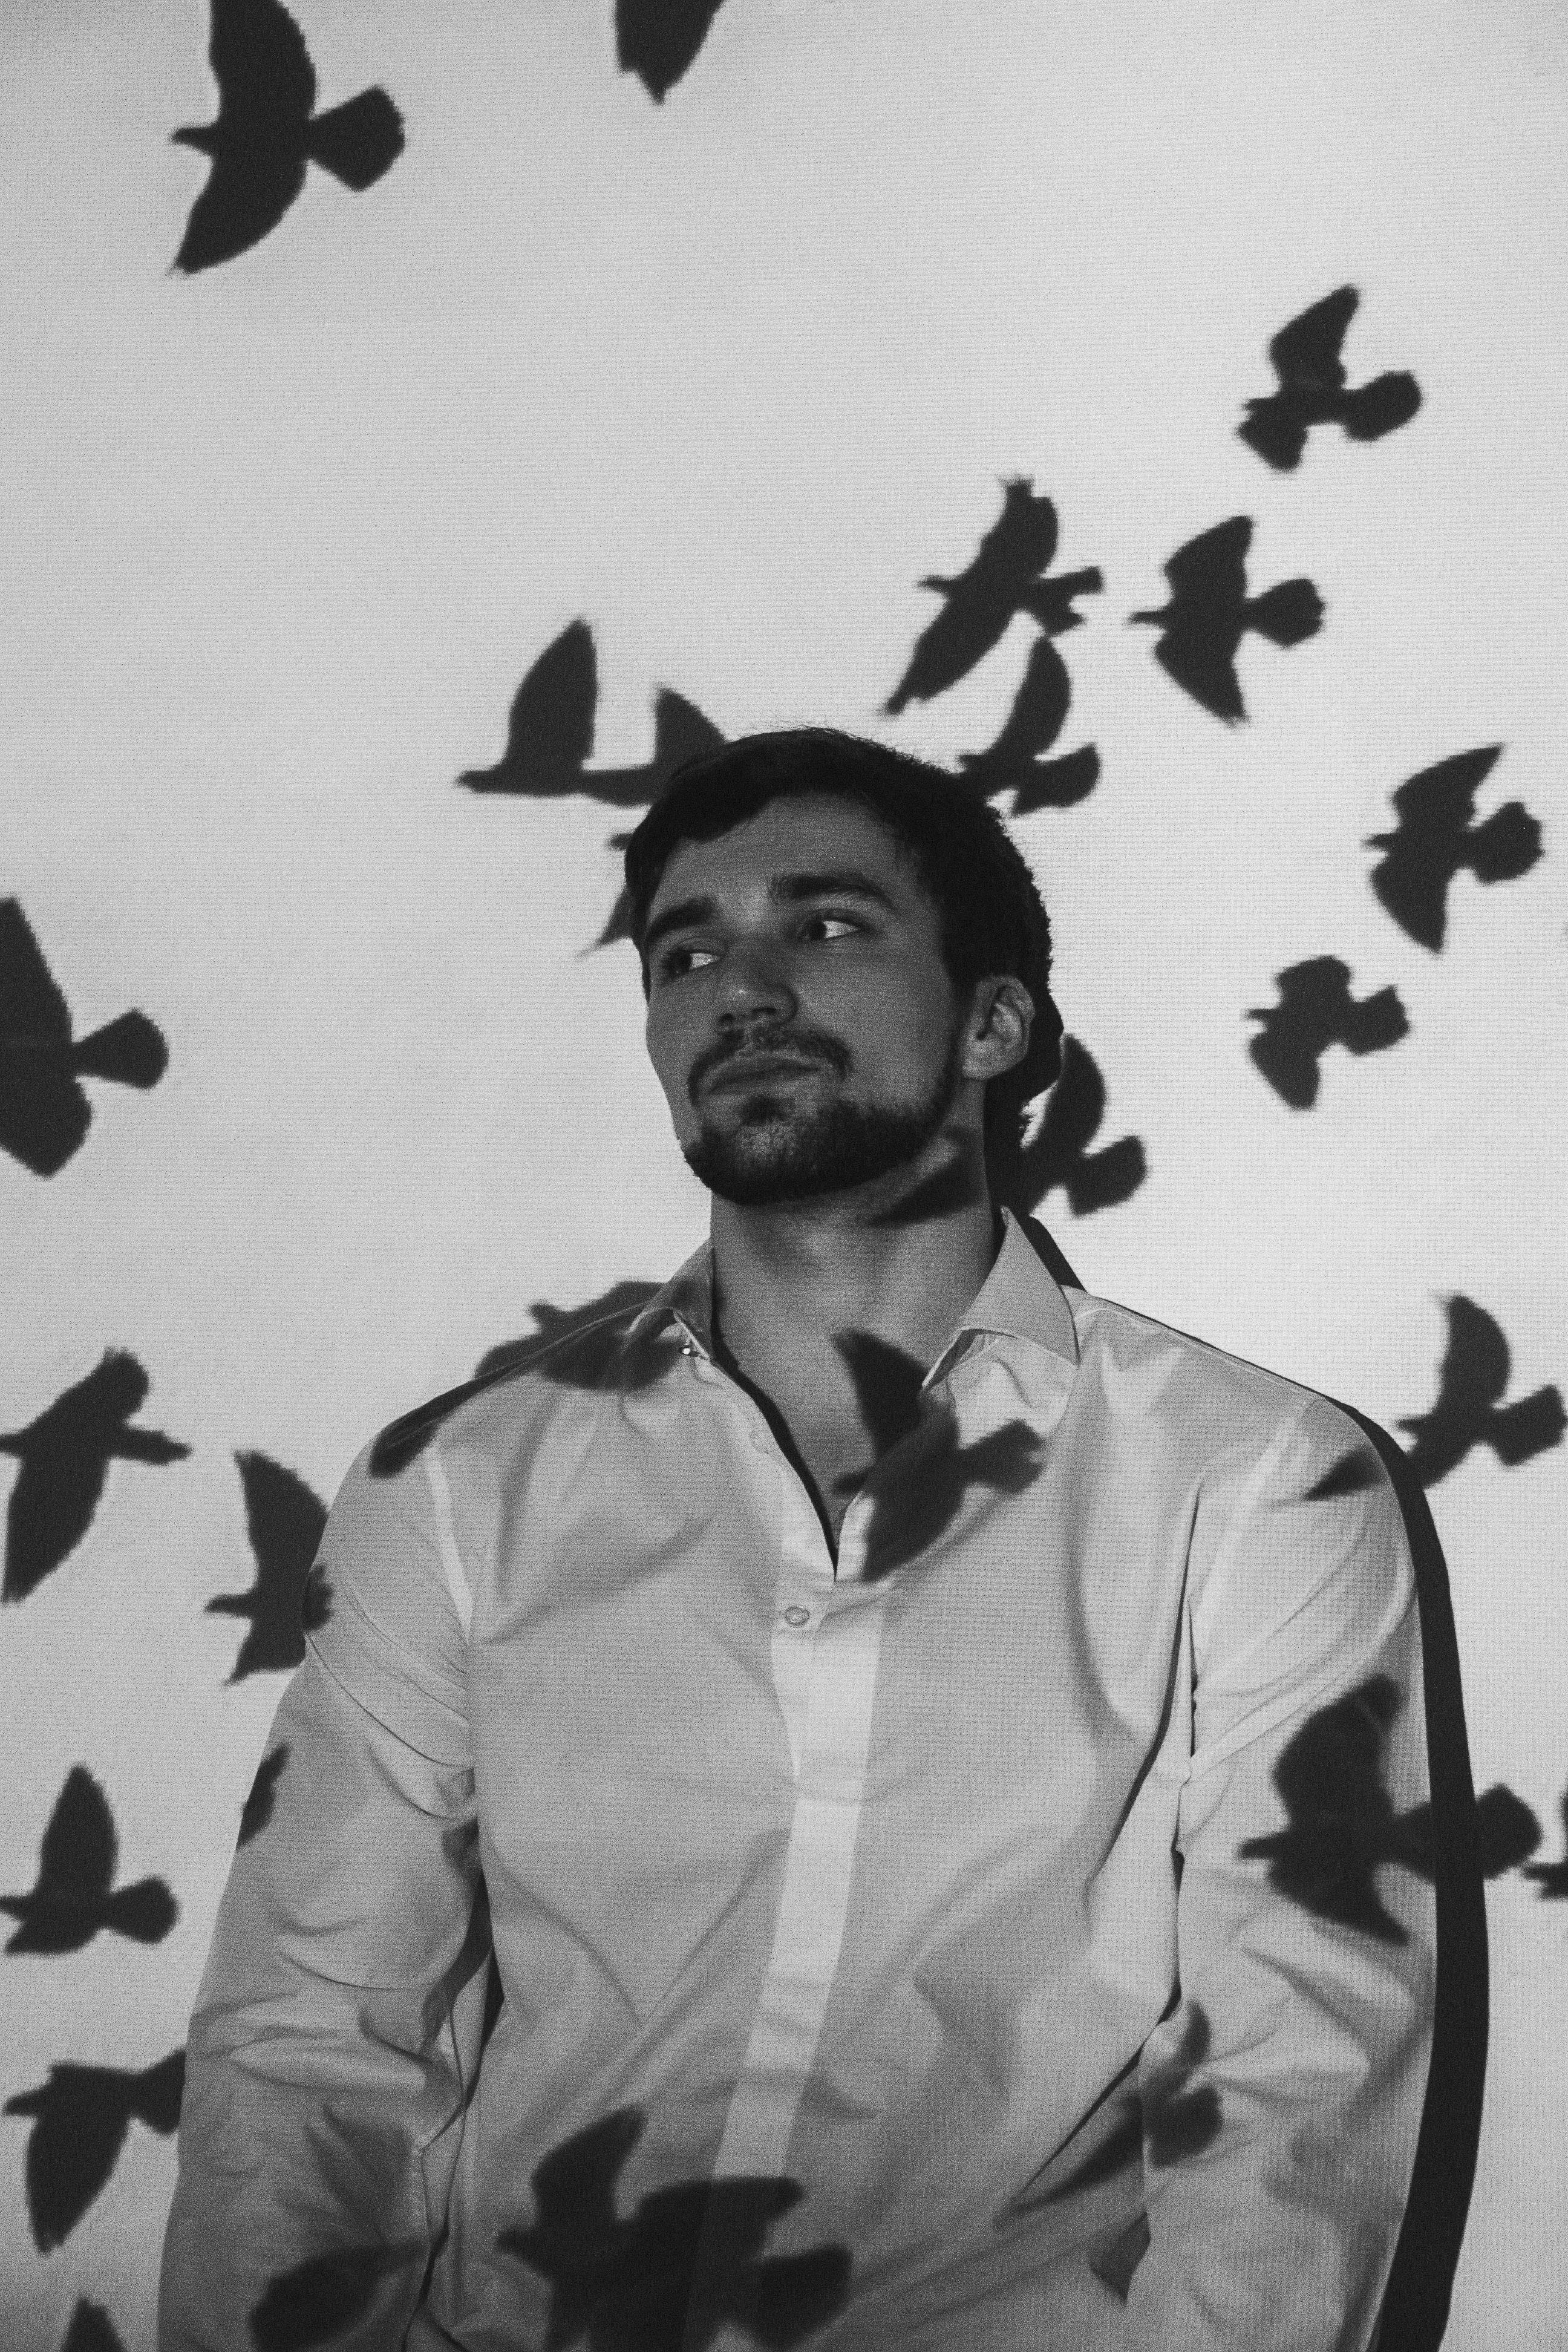 Homme pensif près d'un mur avec des ombres d'oiseaux | Source : Pexels